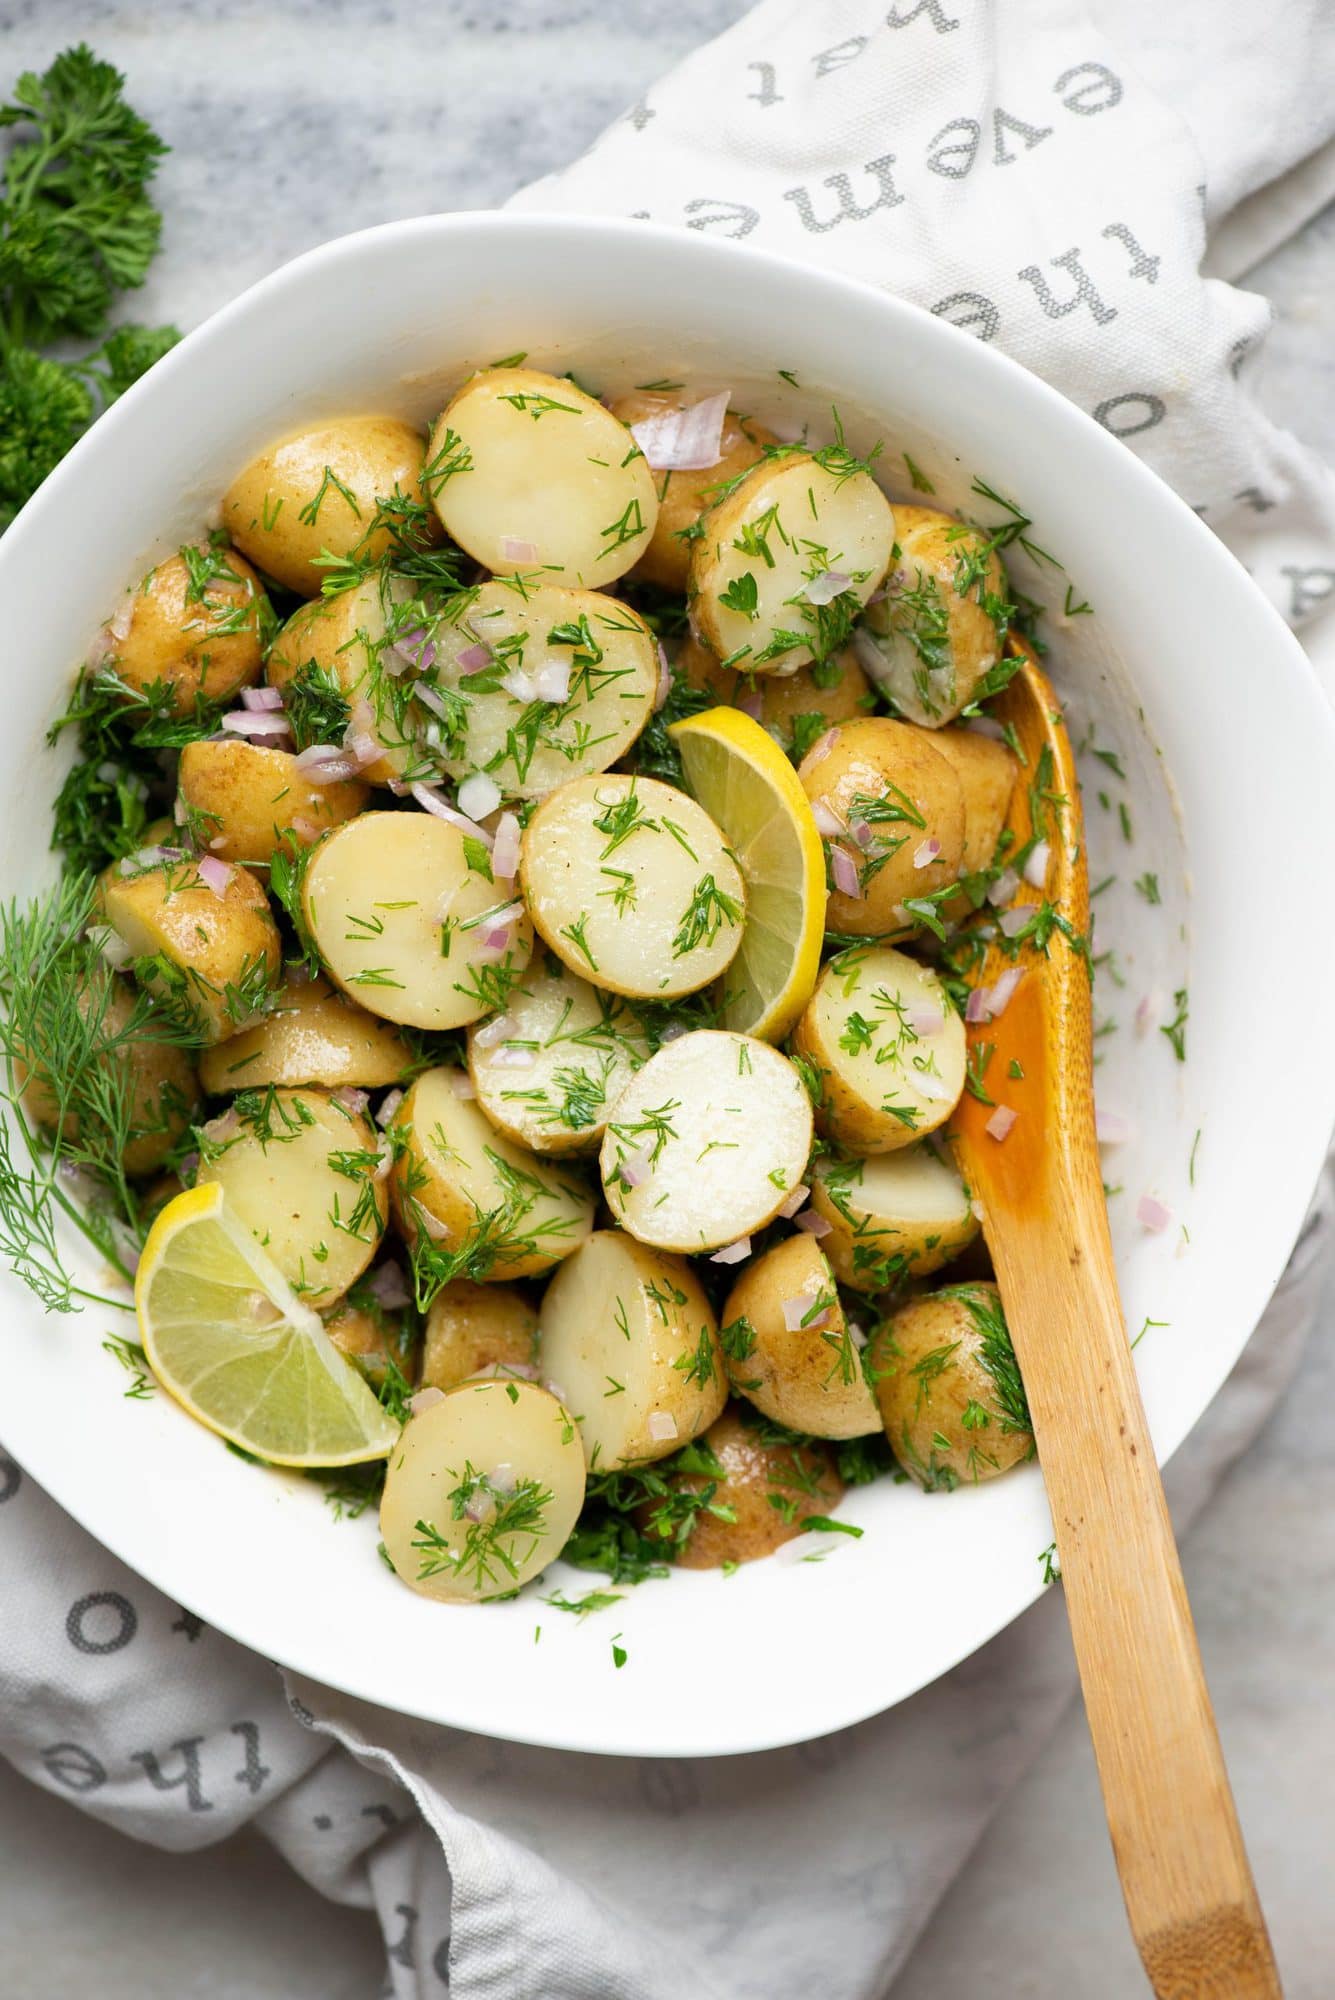 Vegan dill potato salad with a tangy lemon olive oil vinaigrette.